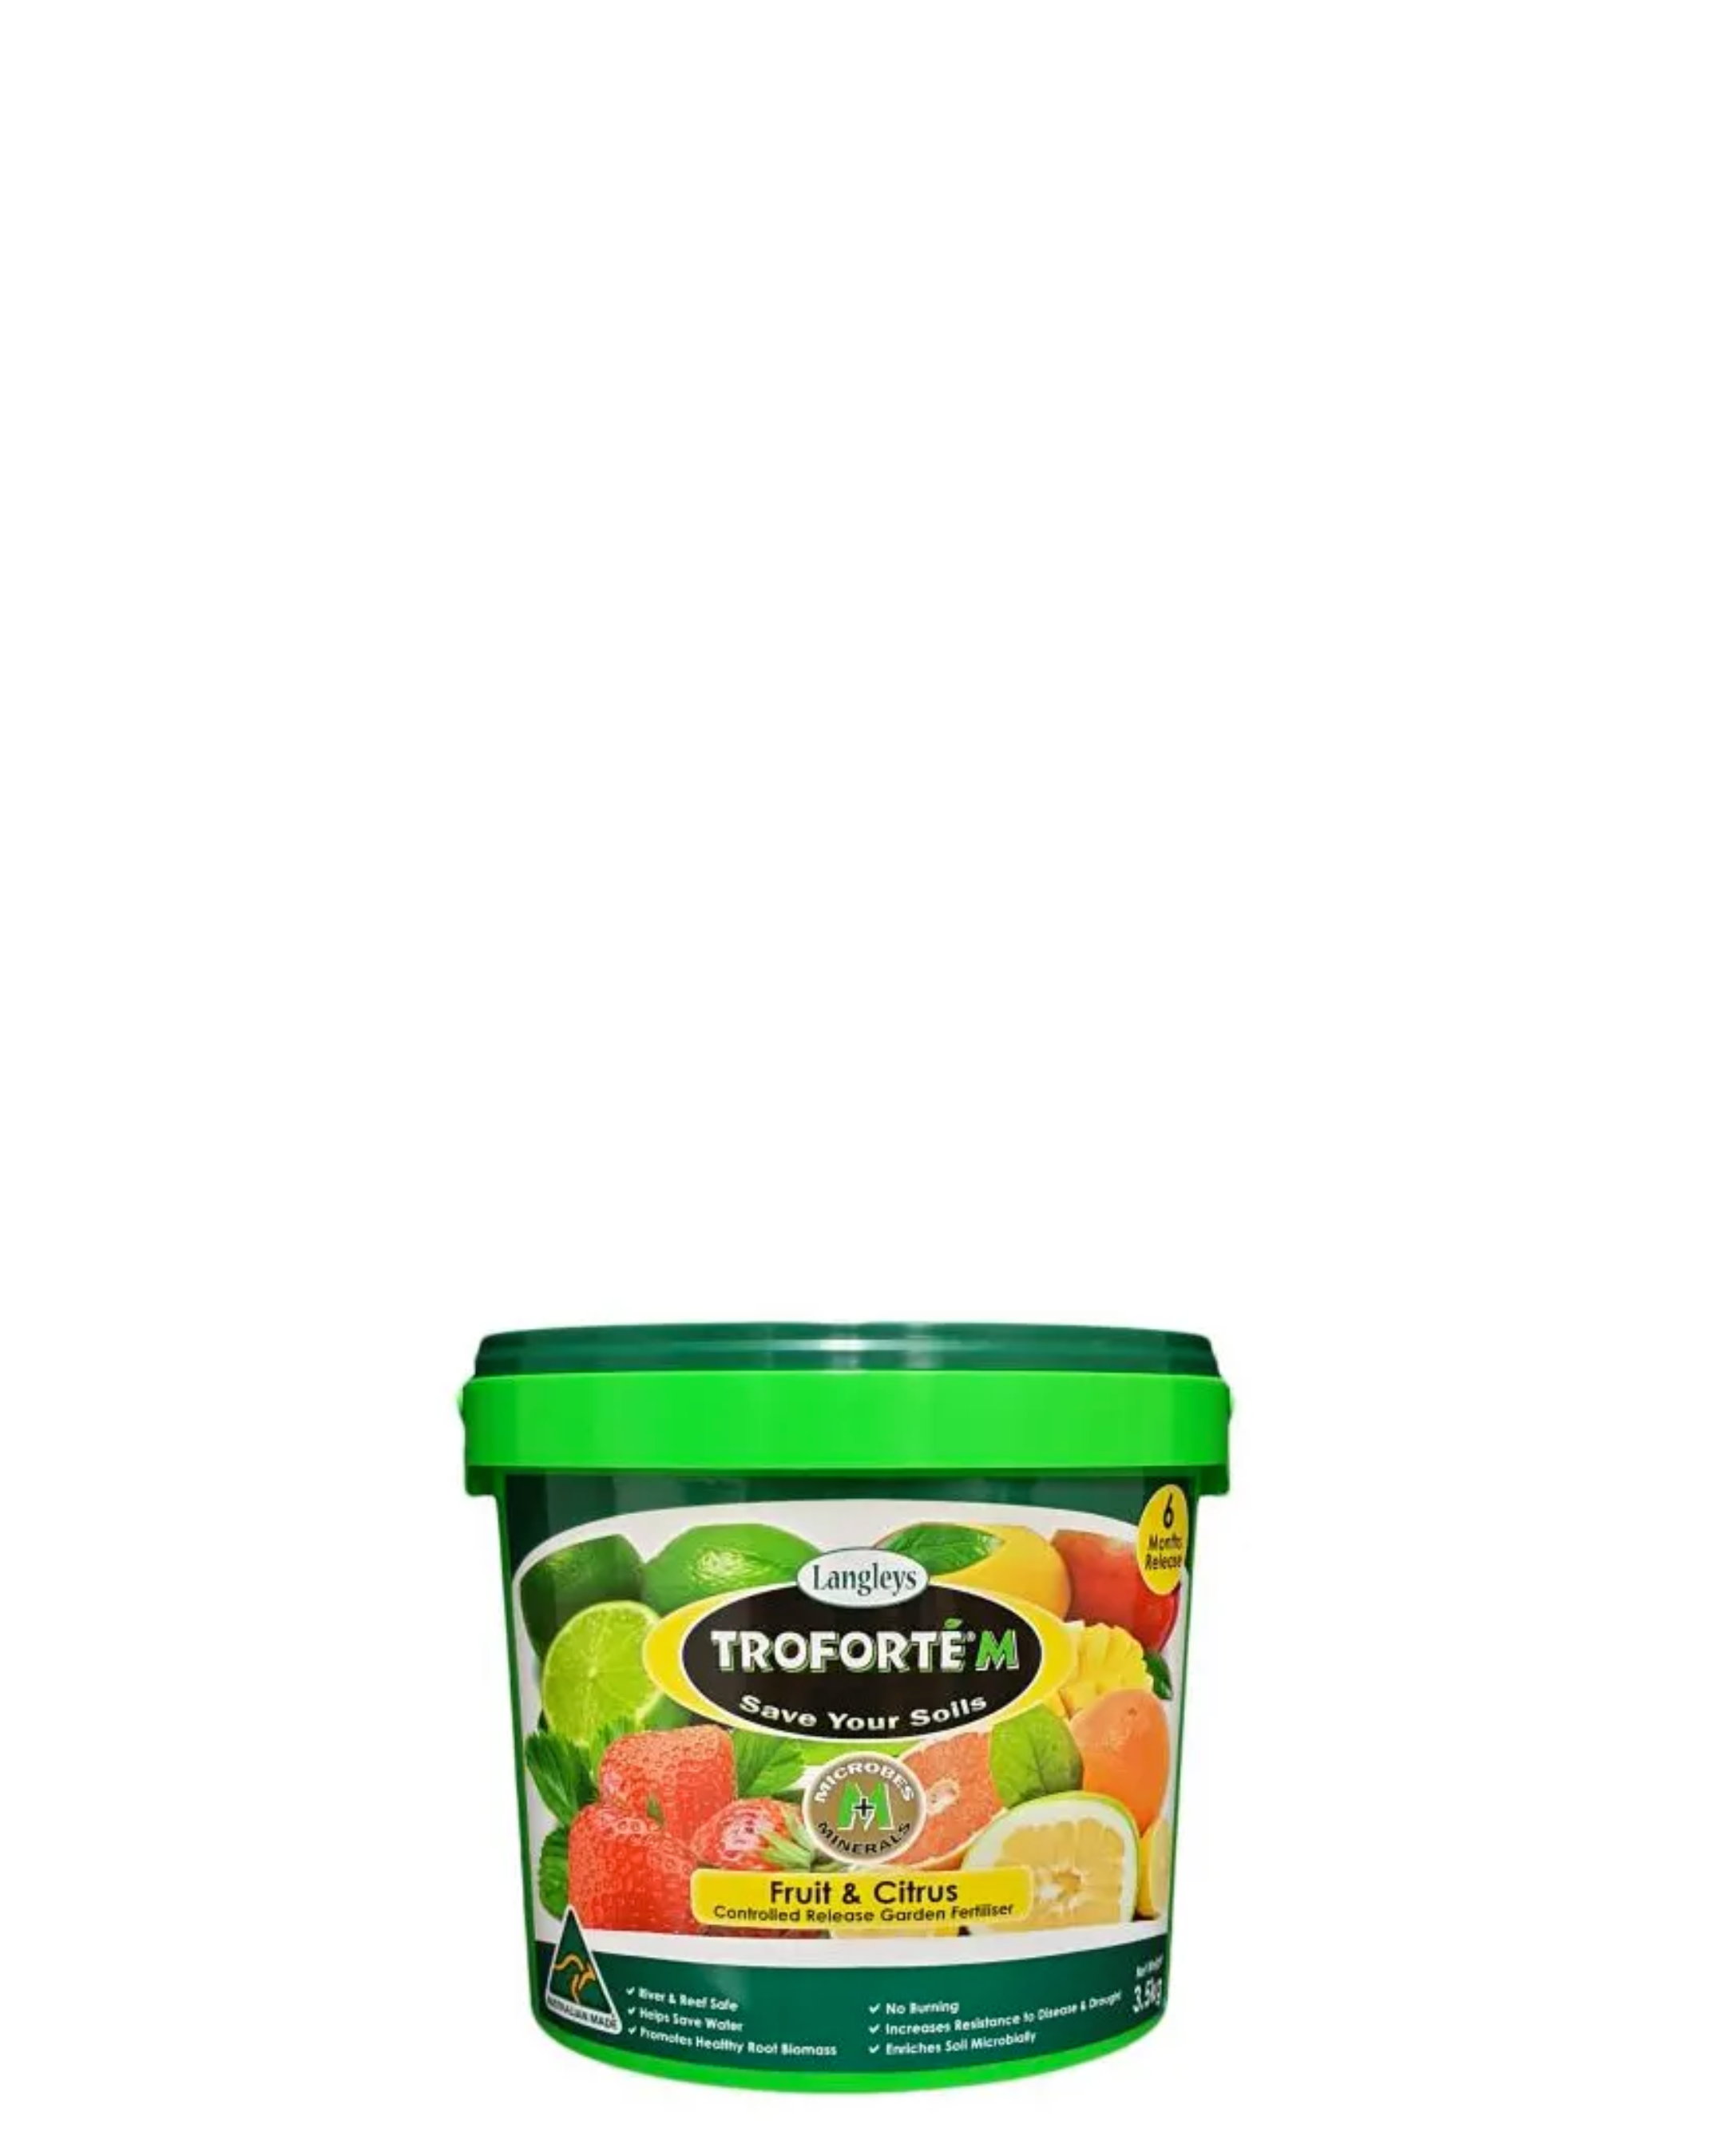 Troforte M Fruit and Citrus